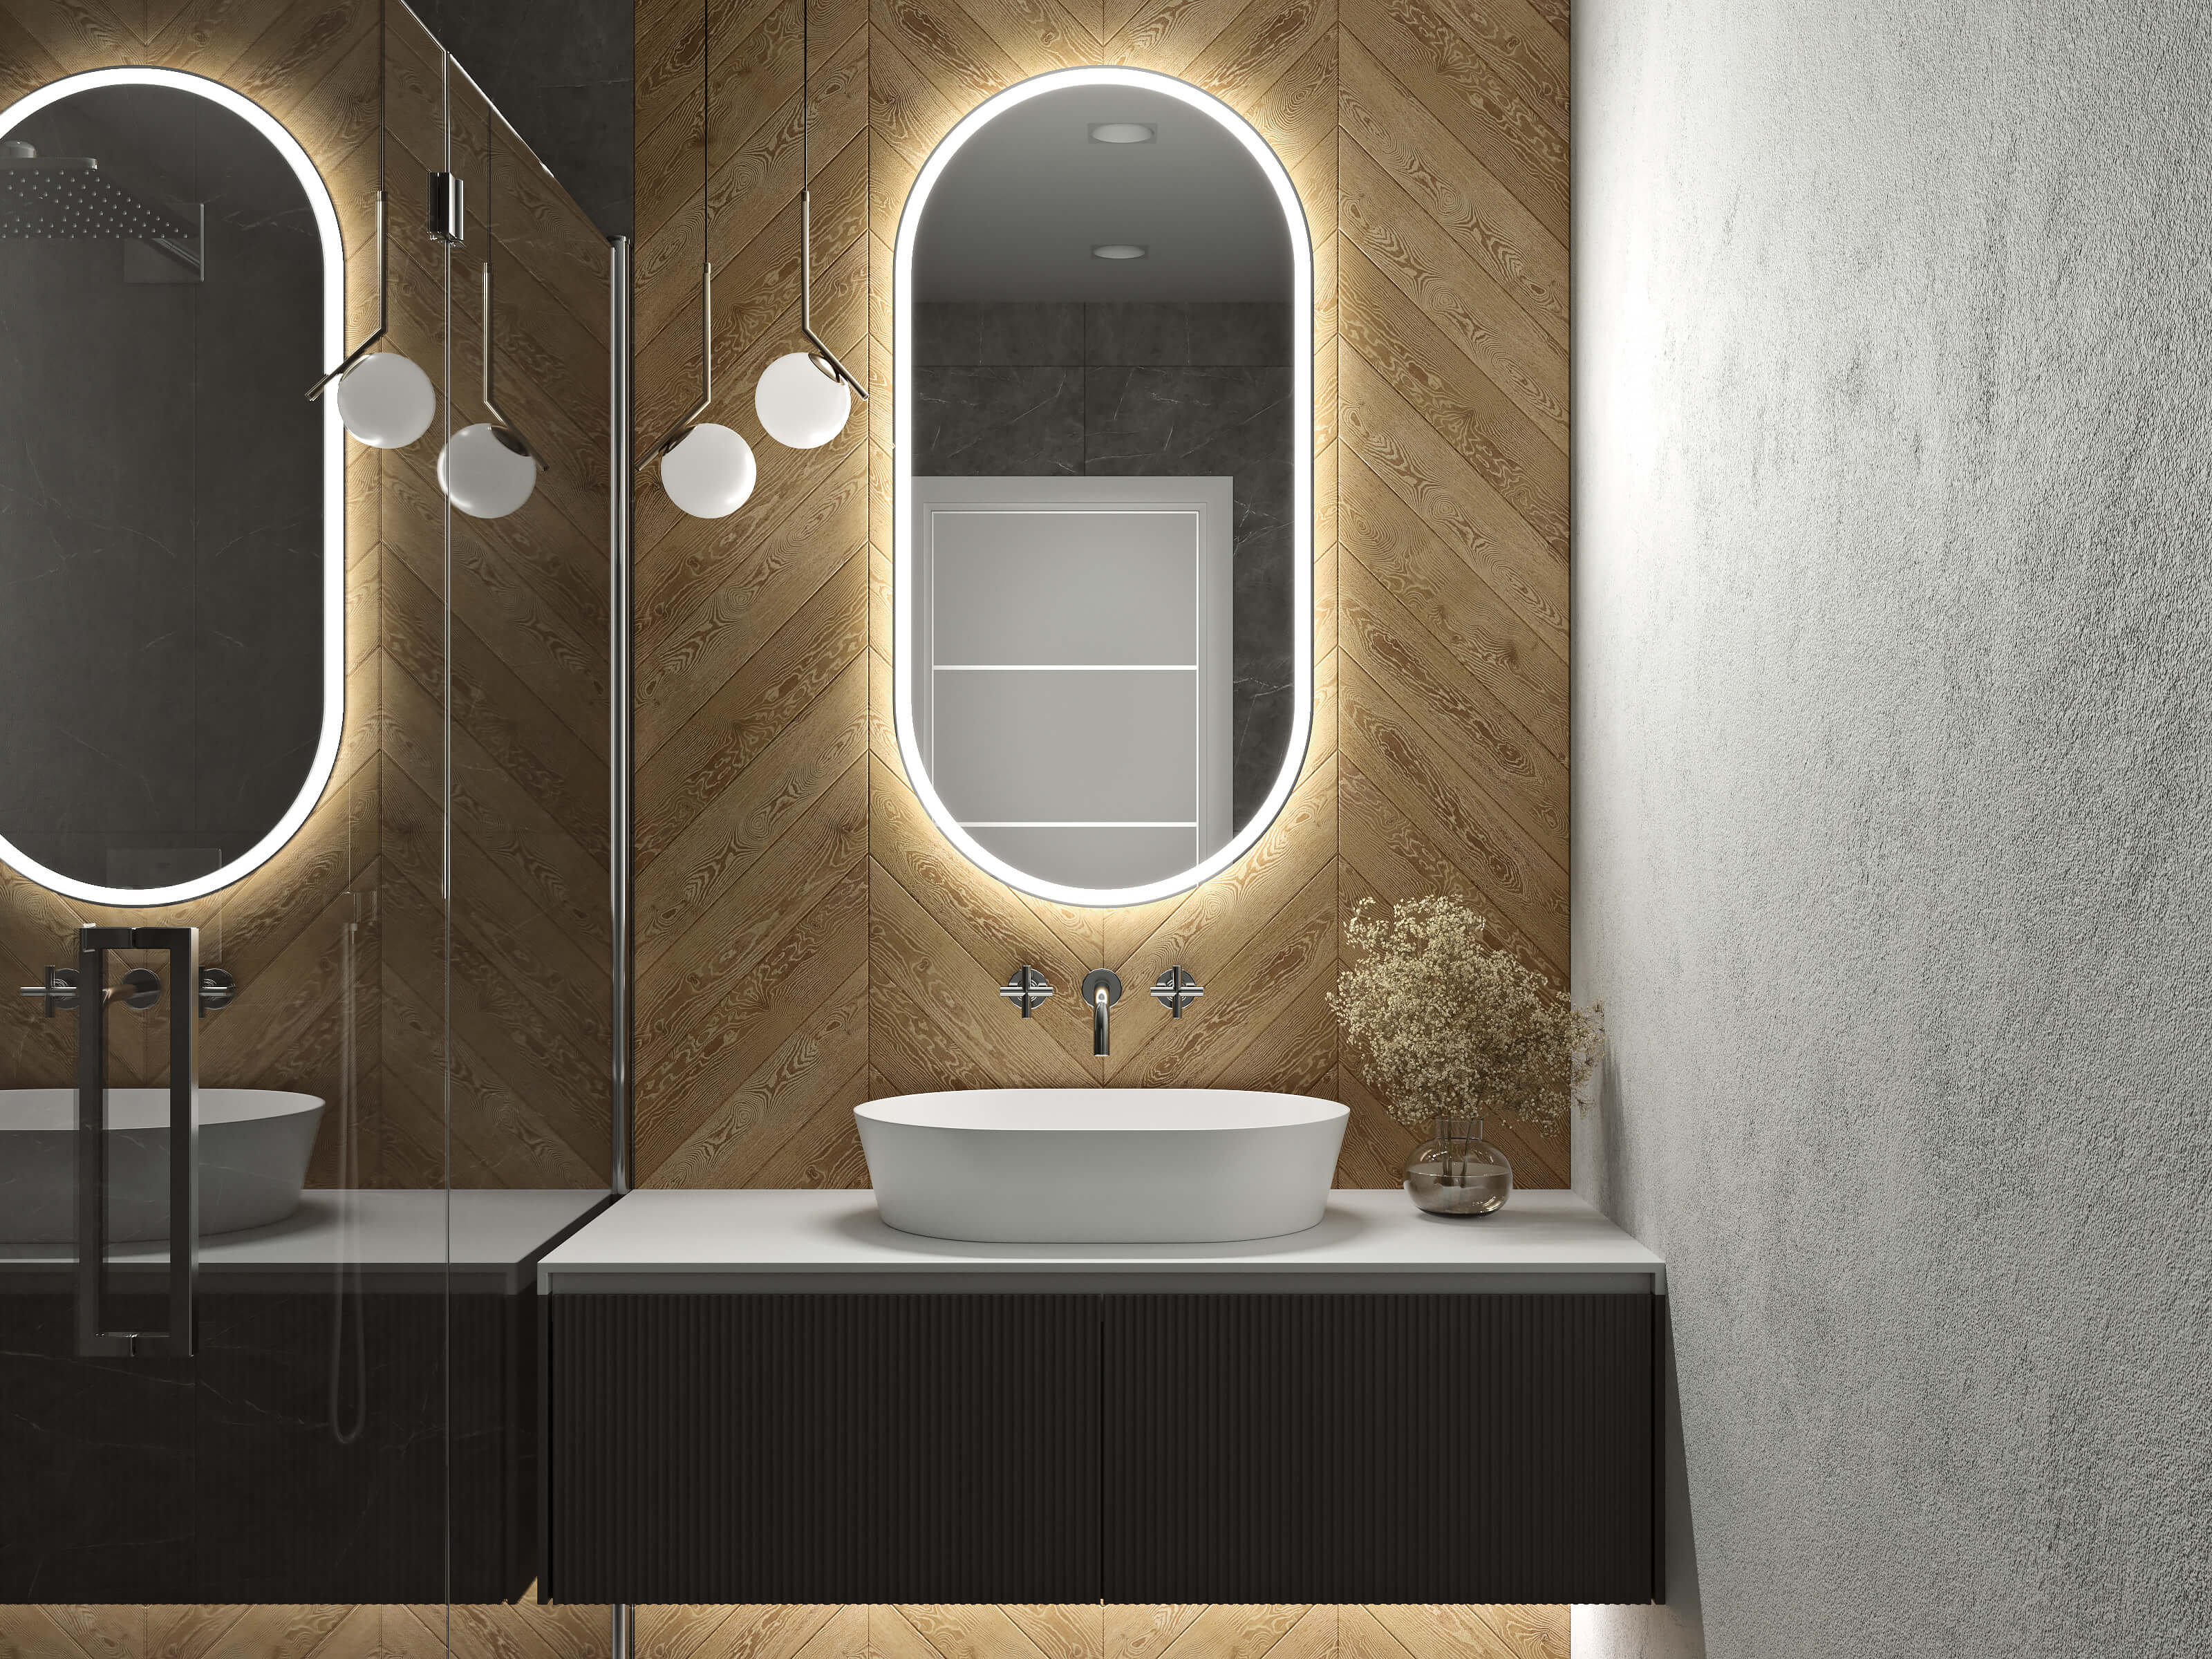 LED-Badspiegel mit kaltweißer Beleuchtung in 60 x 120 cm